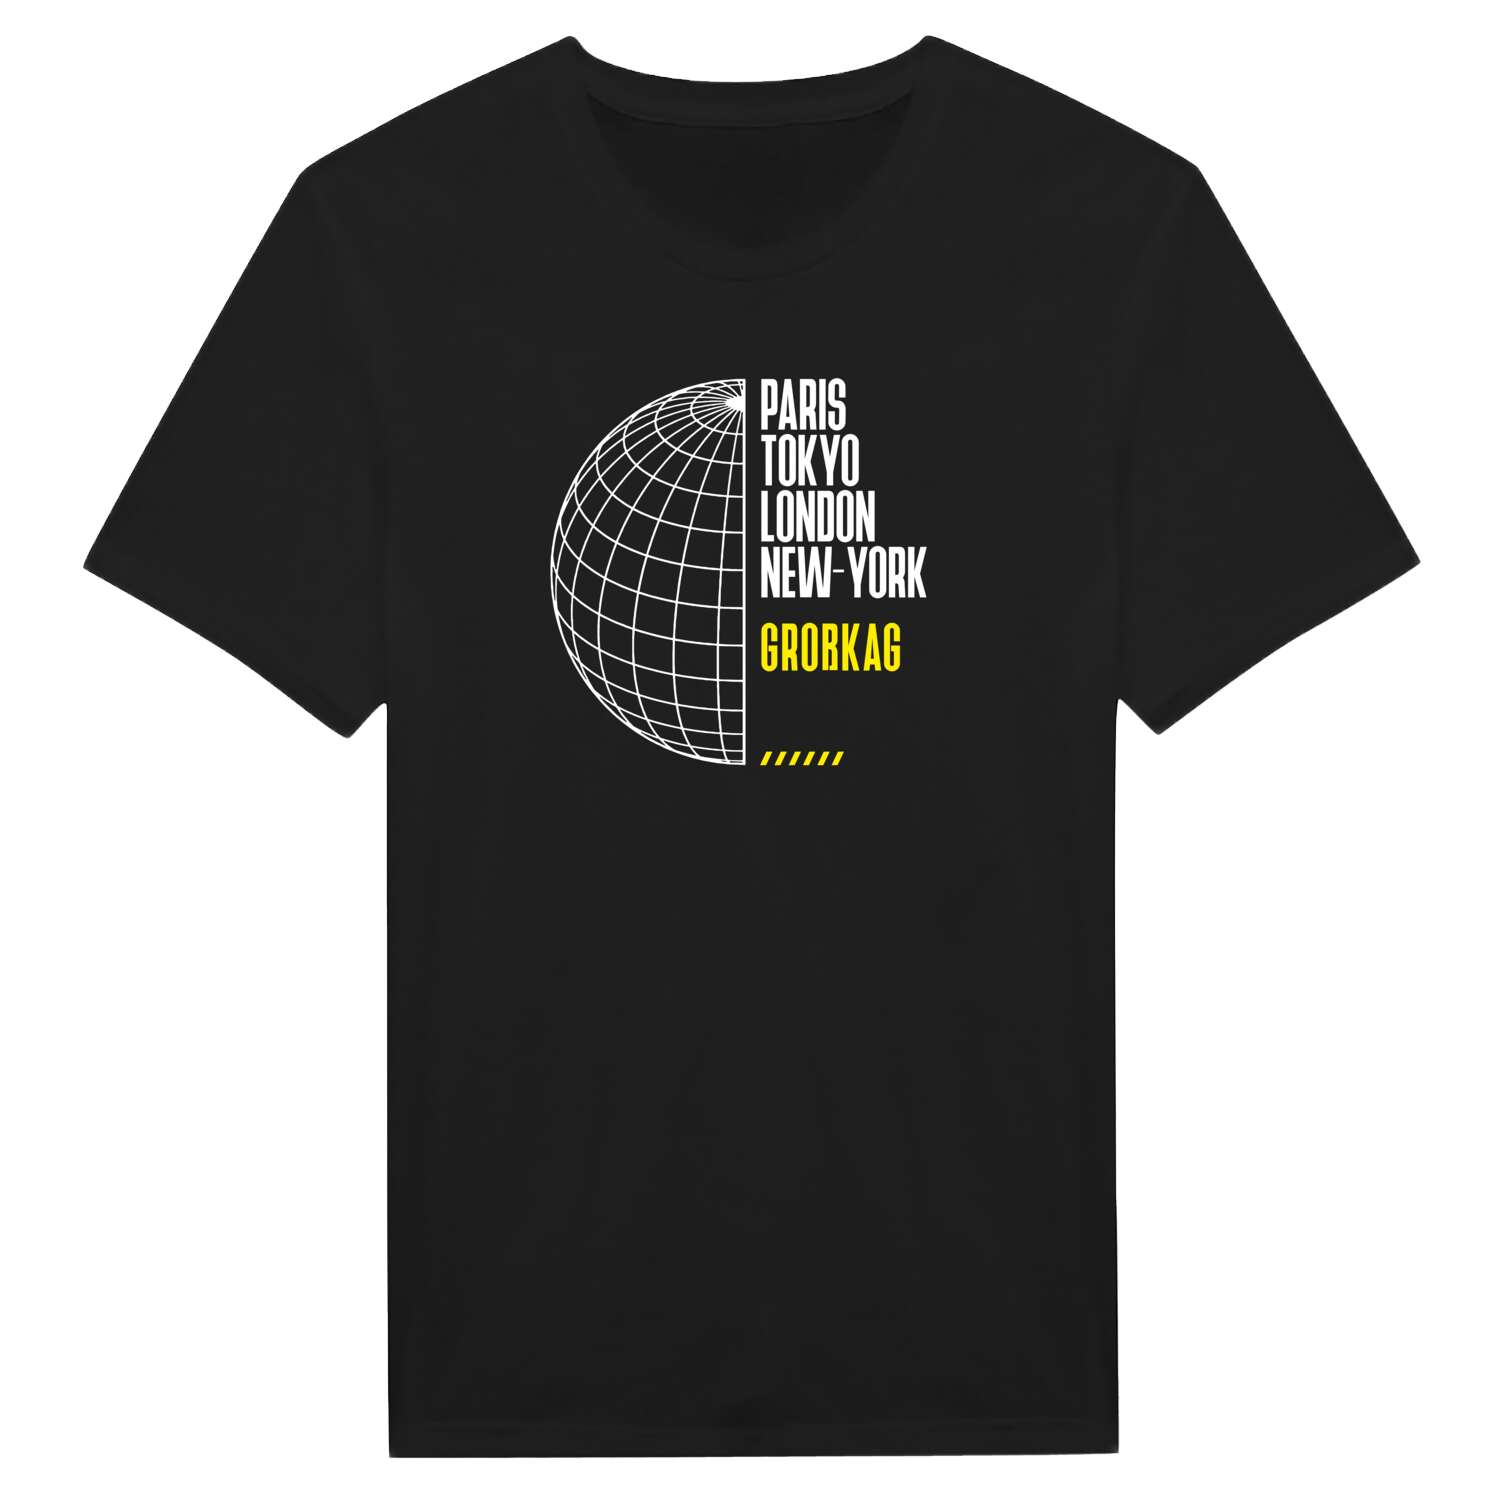 Großkag T-Shirt »Paris Tokyo London«